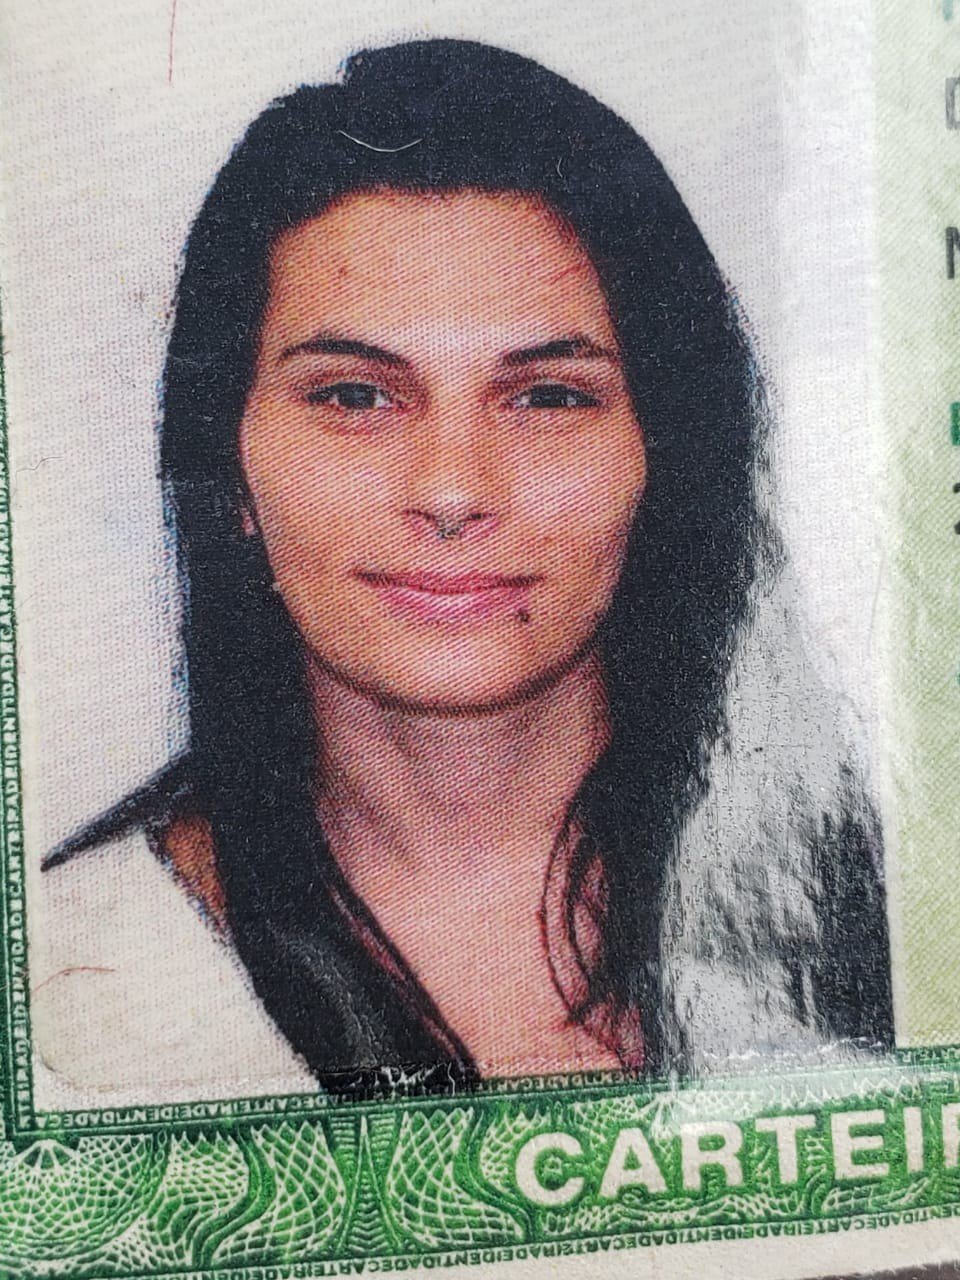 Carolina Sobreira Ardente, 27 anos, era estudante de medicina da UFRJ - Divulgação